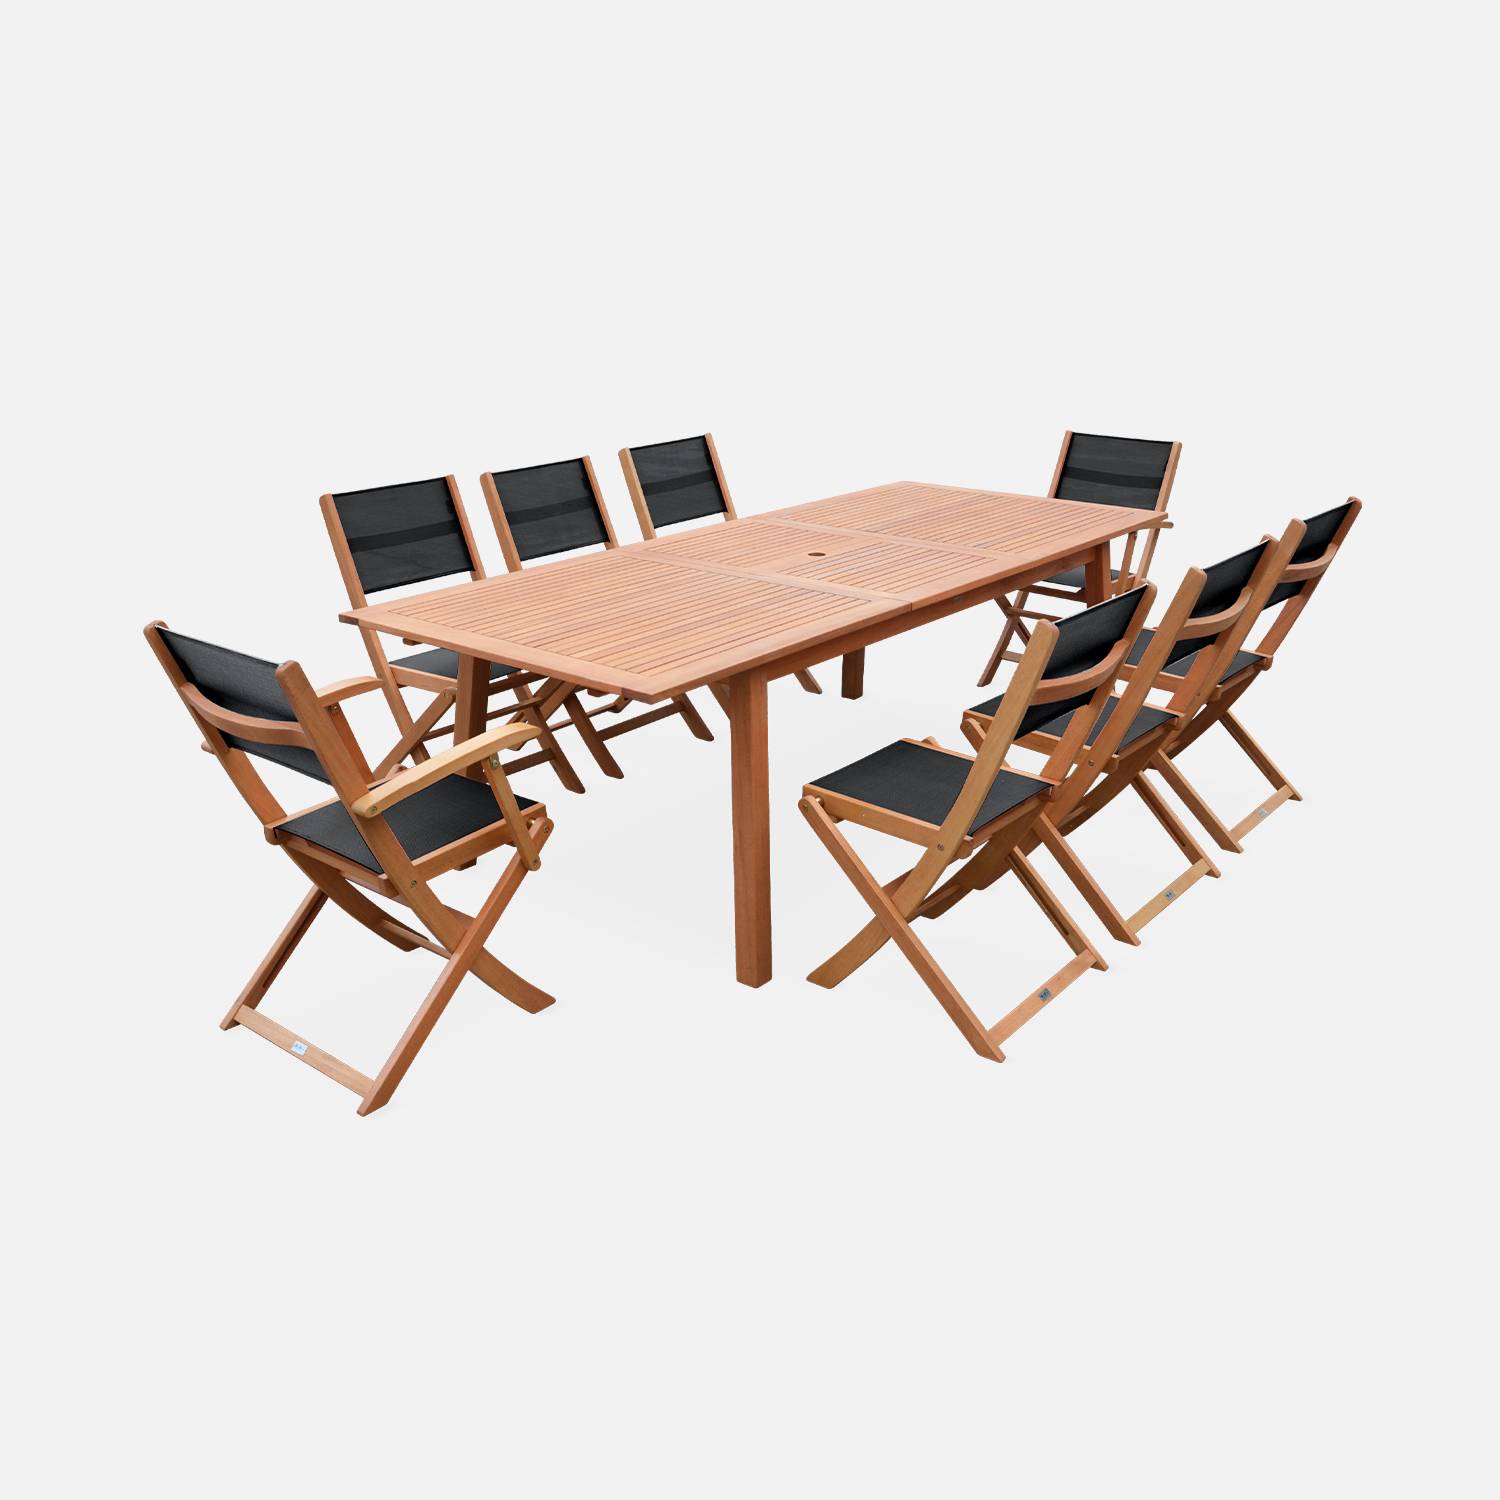 Ausziehbare Gartengarnitur aus Holz - Almeria - Großer Tisch 180/240 cm mit Verlängerung, 2 Sesseln und 6 Stühlen aus geöltem FSC-Eukalyptusholz und schwarzem Textilene Photo1